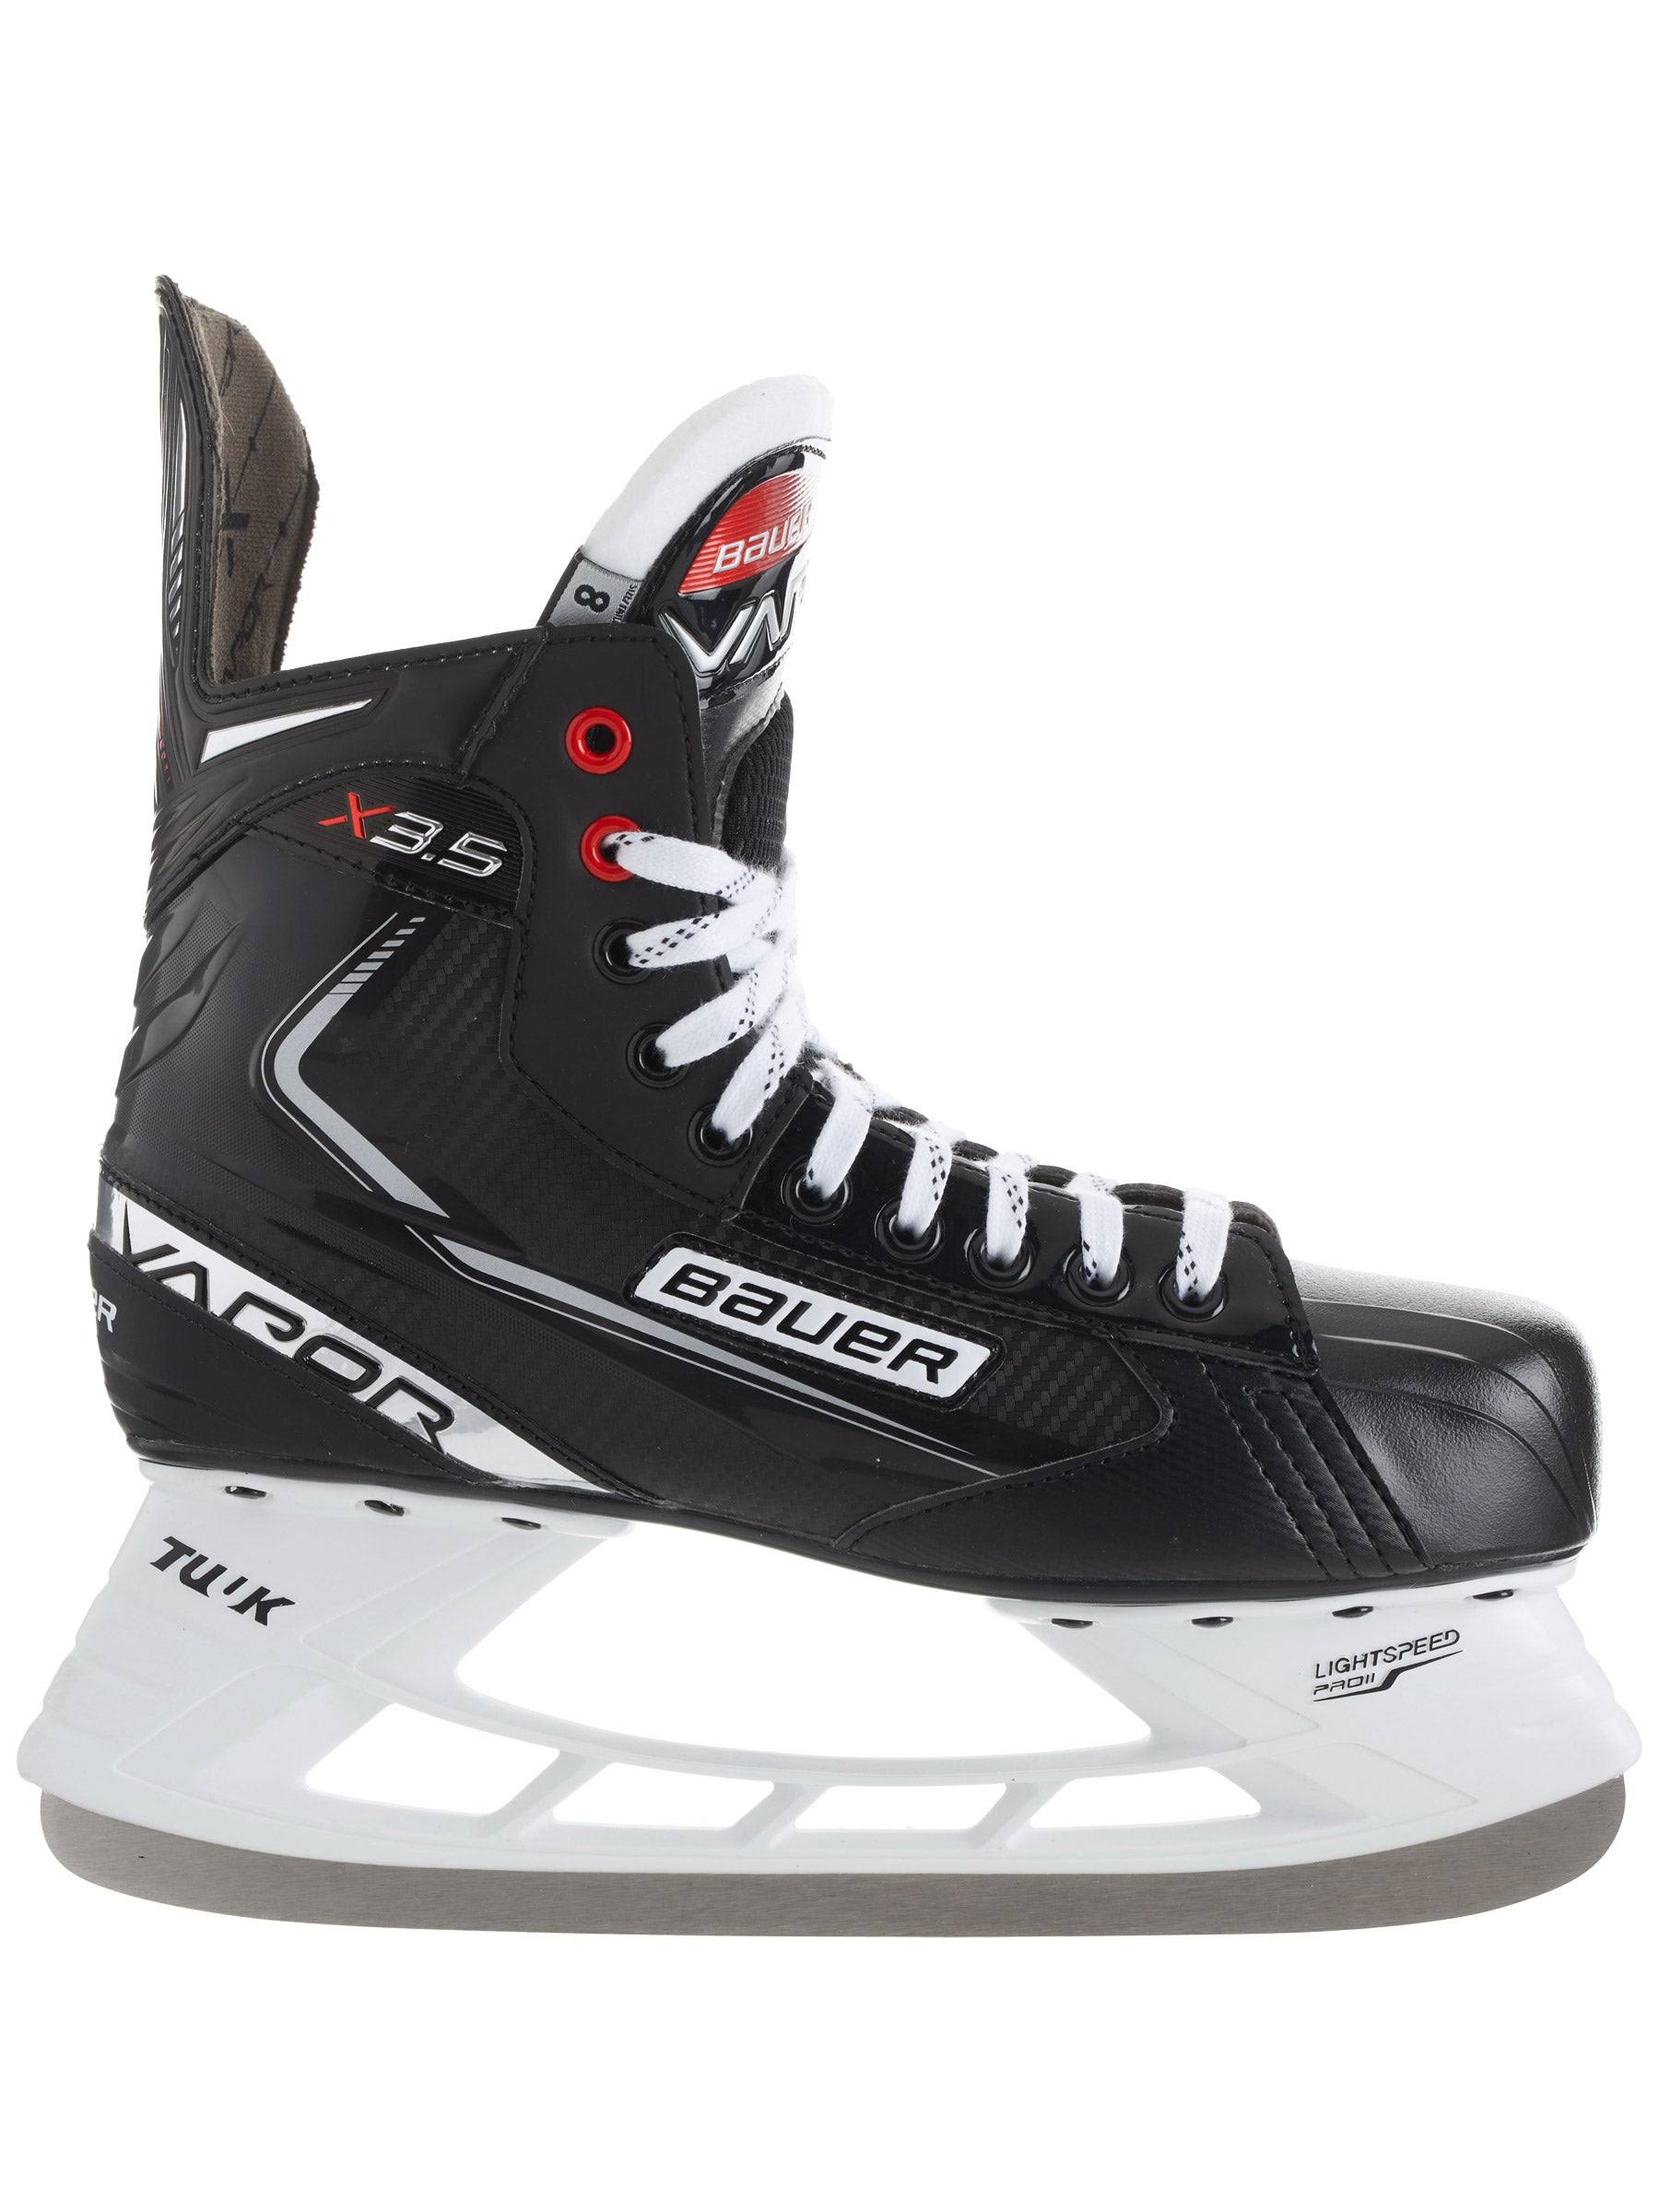 Bauer Vapor X3.5 Ice Hockey Skates - Senior - 8.5 - D